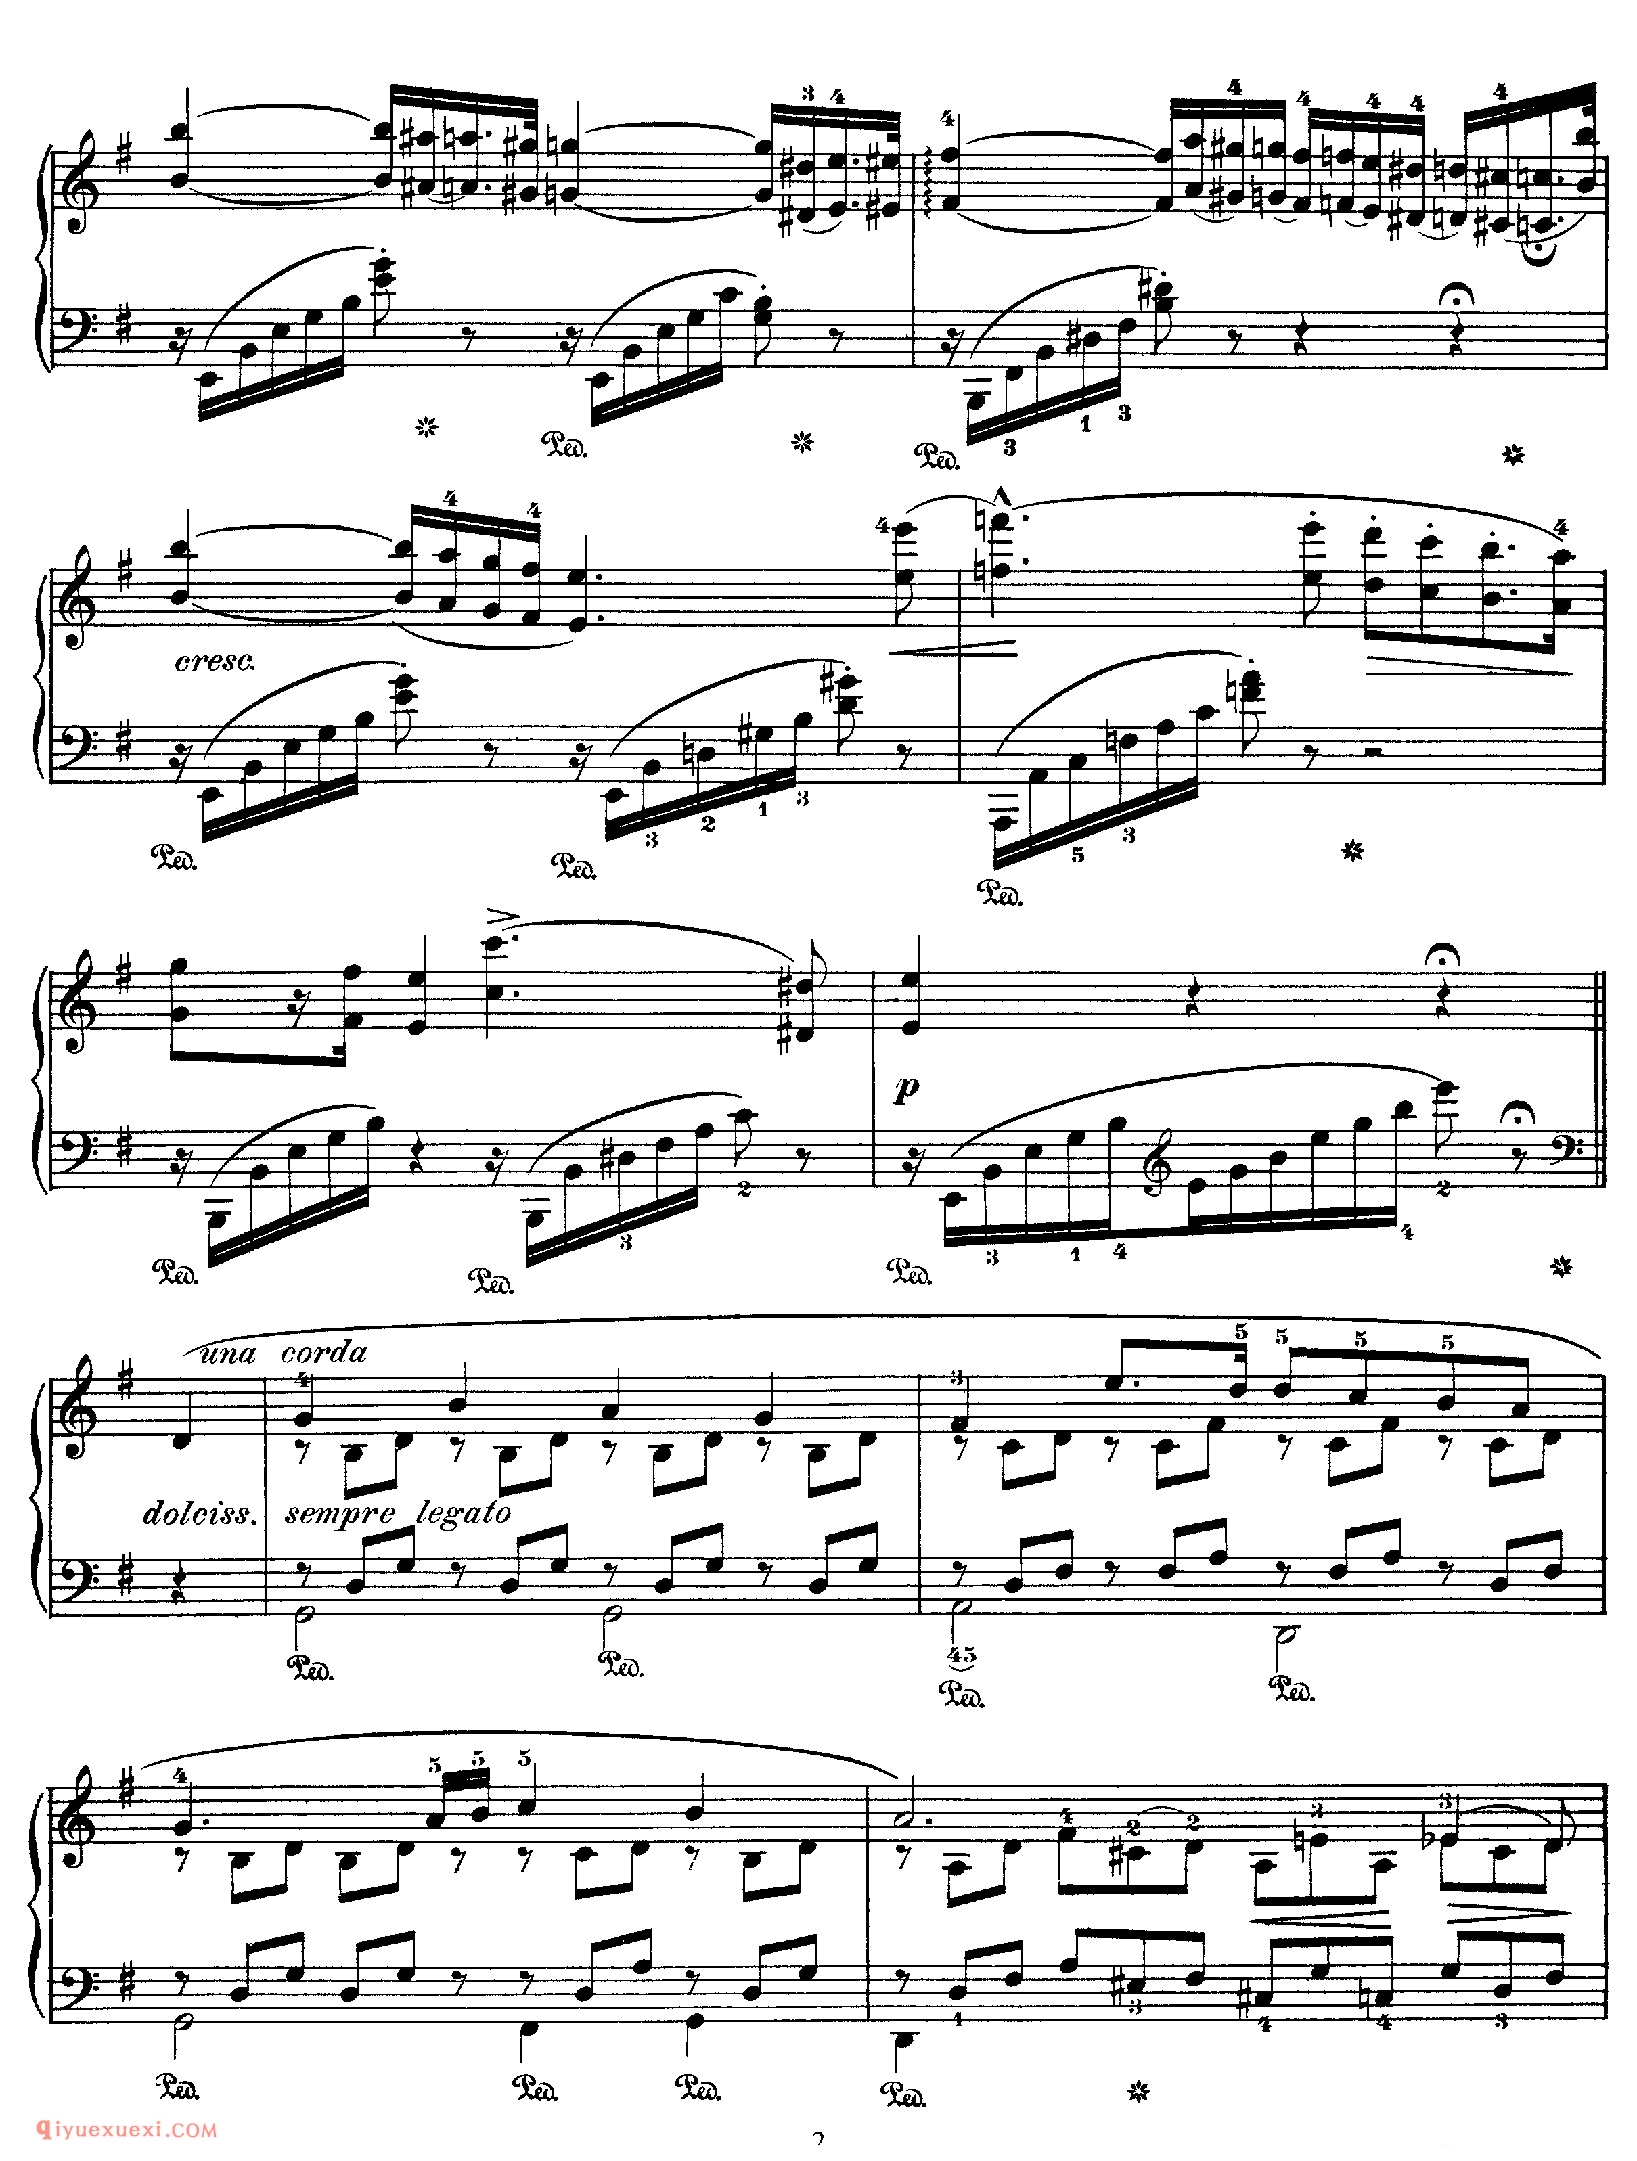 李斯特匈牙利狂想曲第5号_Hungarian Rhapsody No 5 in e_李斯特钢琴乐谱